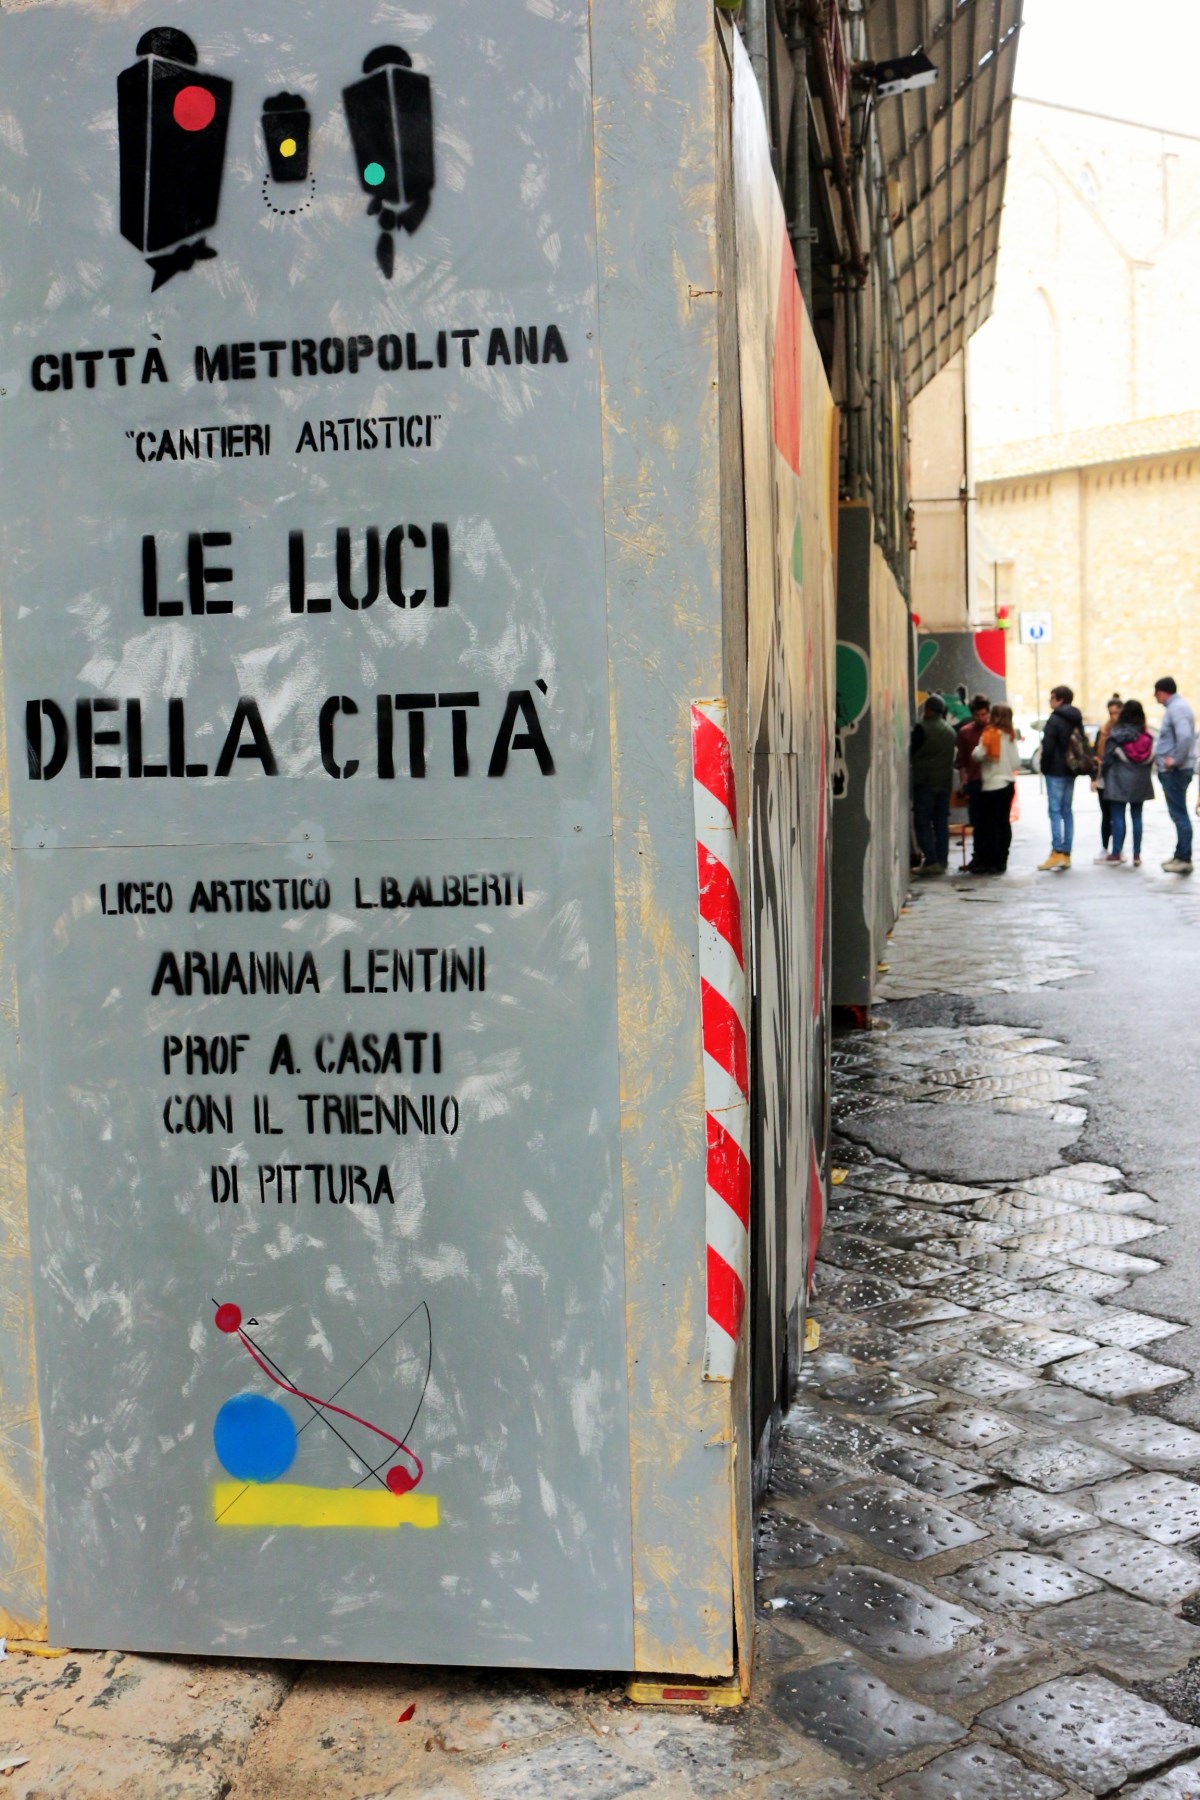 Cantieri artistici 'Le luci della citt' al liceo Alberti di Firenze (foto di Antonello Serino, Redazione di Met)